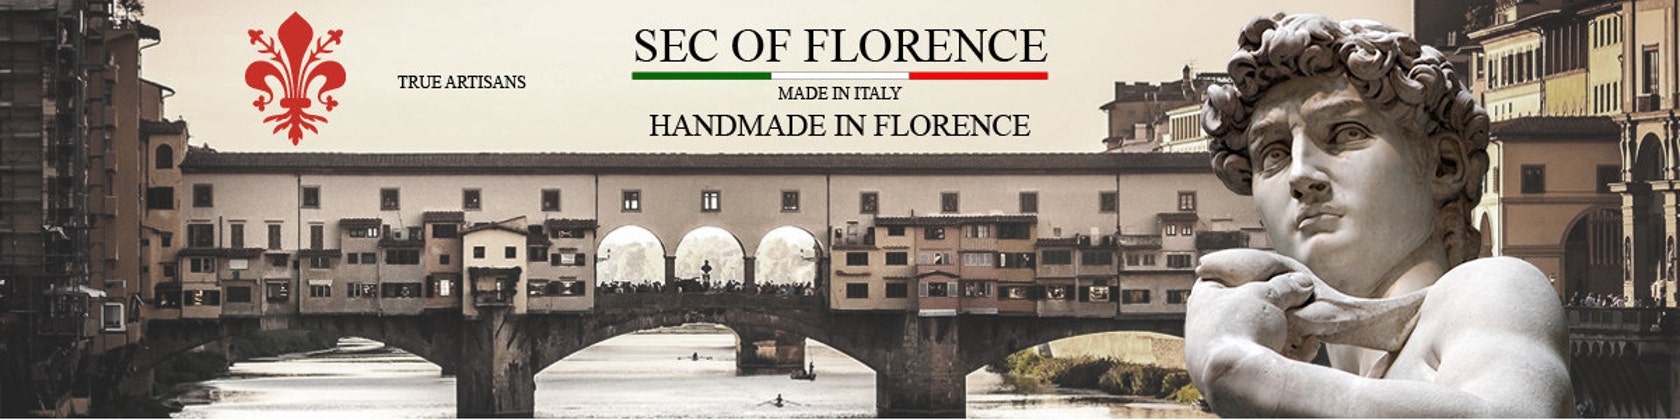 Cornice d'argento modello 10x15 Cornice Portafoto in Argento Massiccio 925  con Retro in Legno Mogano 10x15/7200 - Sec of Florence